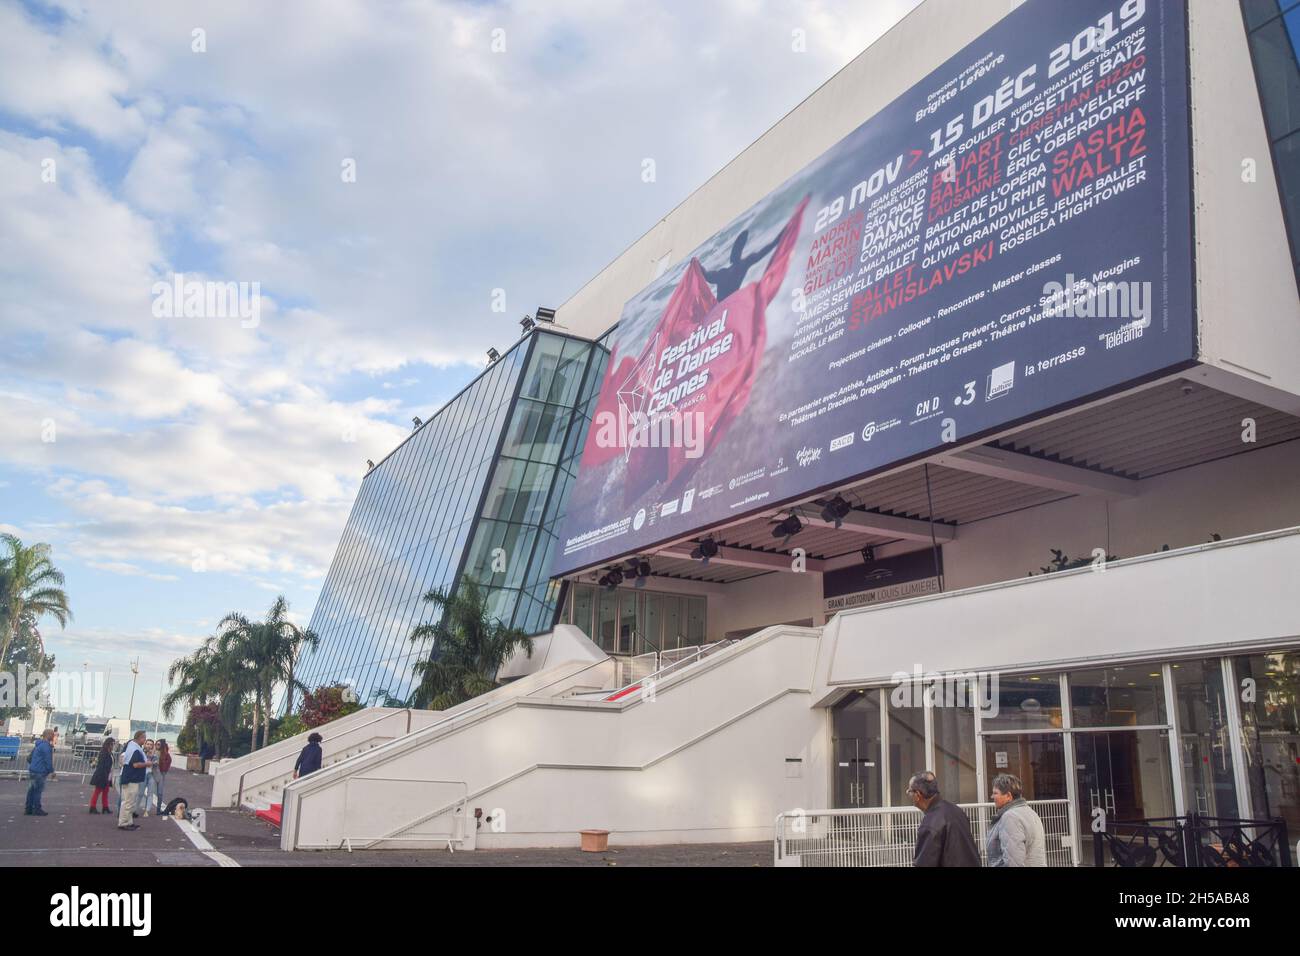 Festival de Danse 2019, Cannes, France Stock Photo